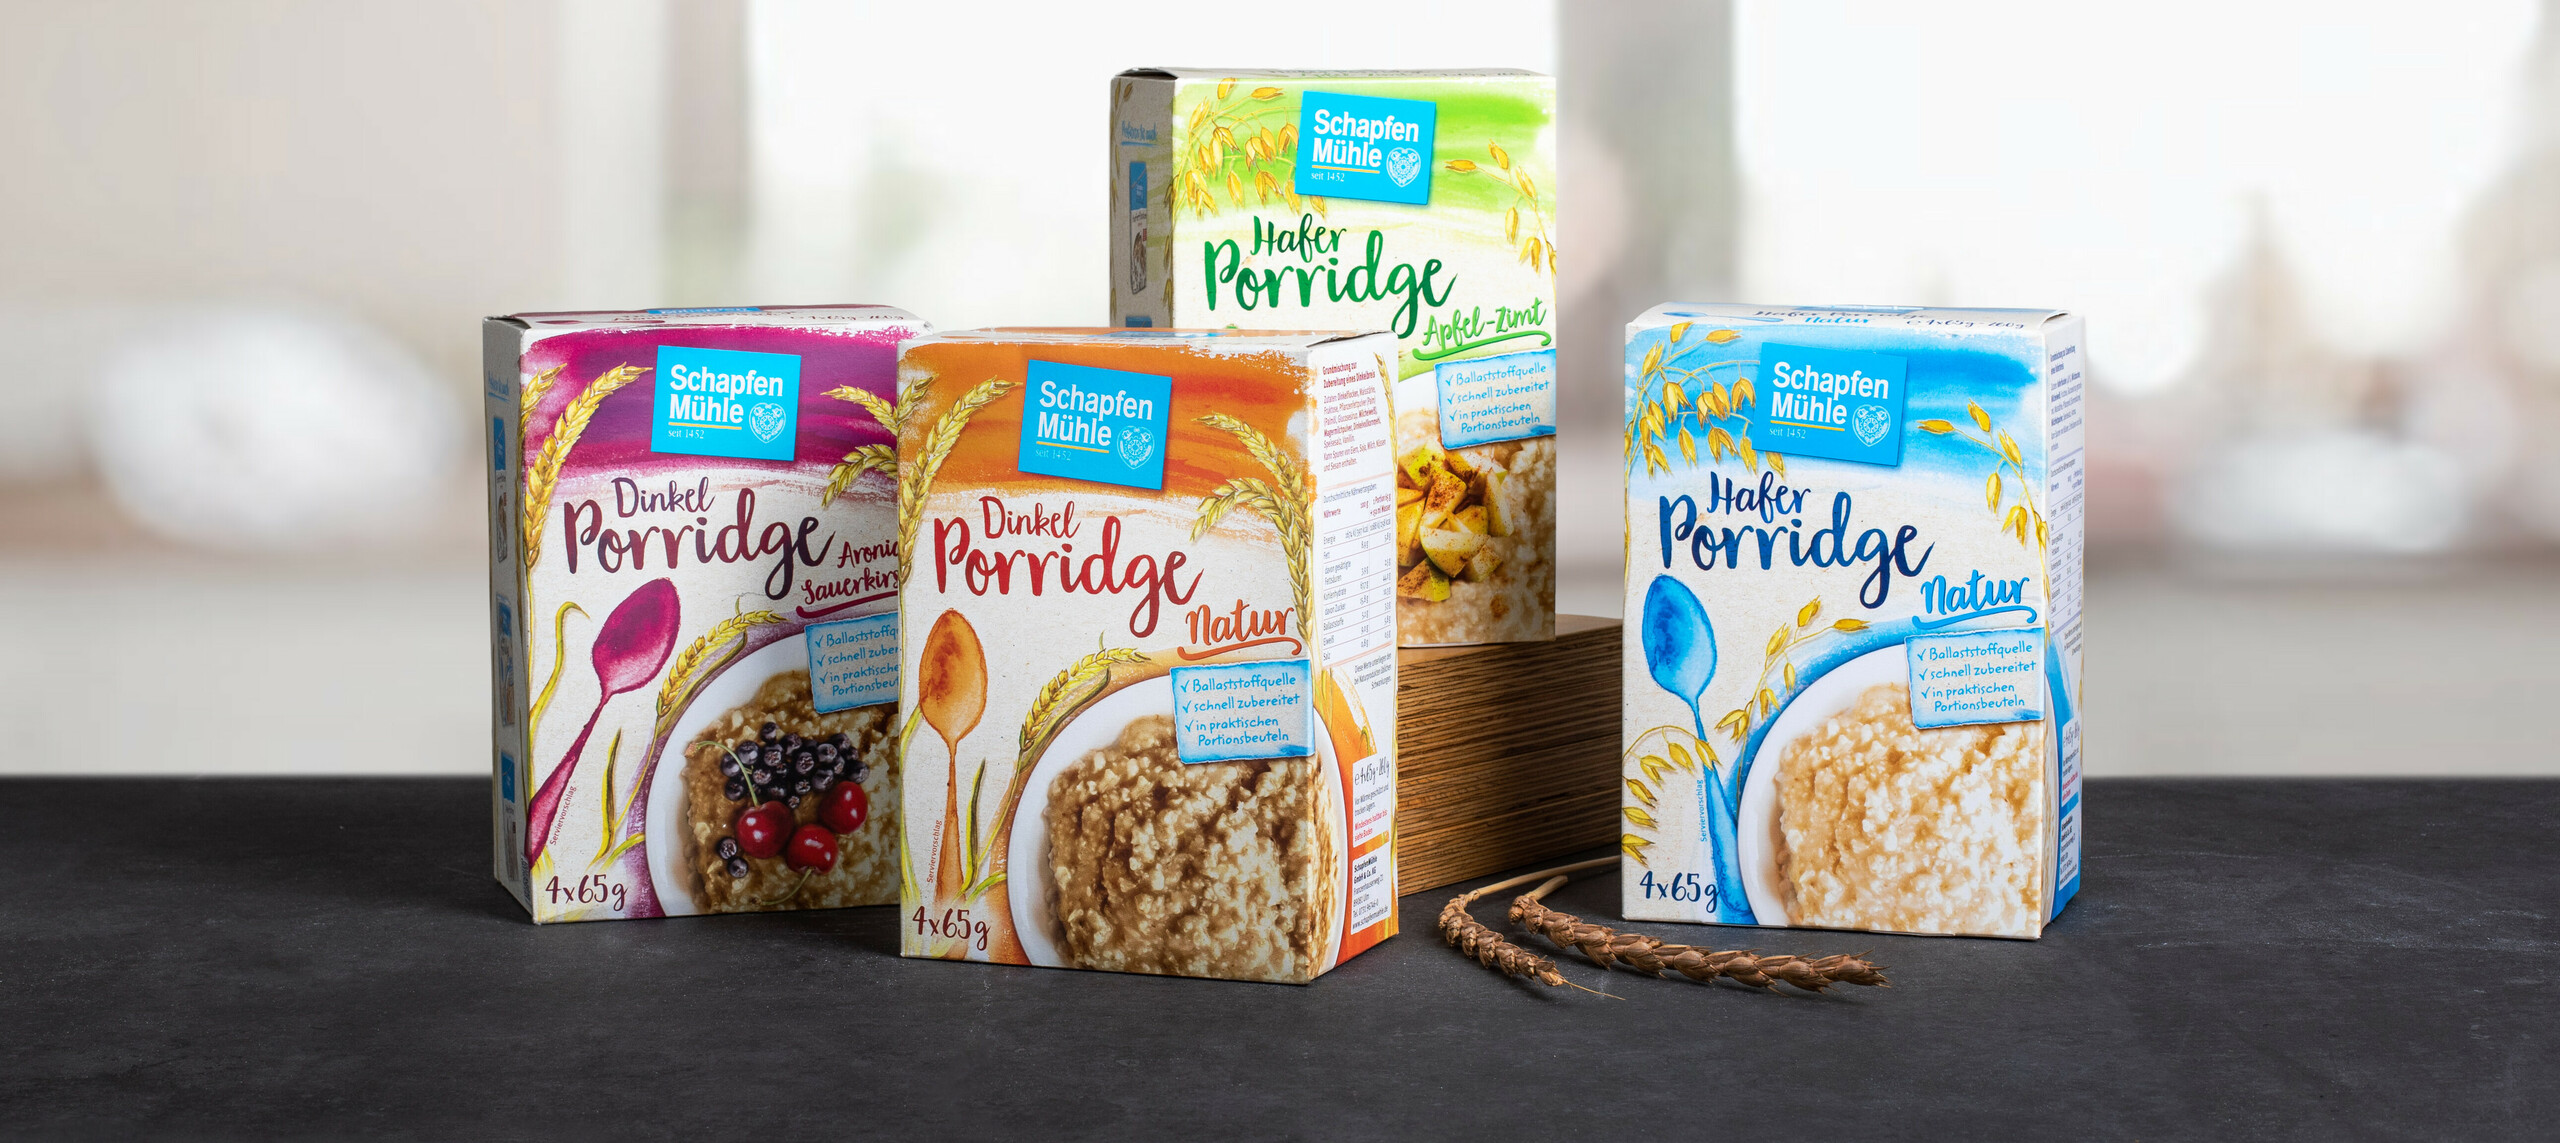 Abbildung Porridge